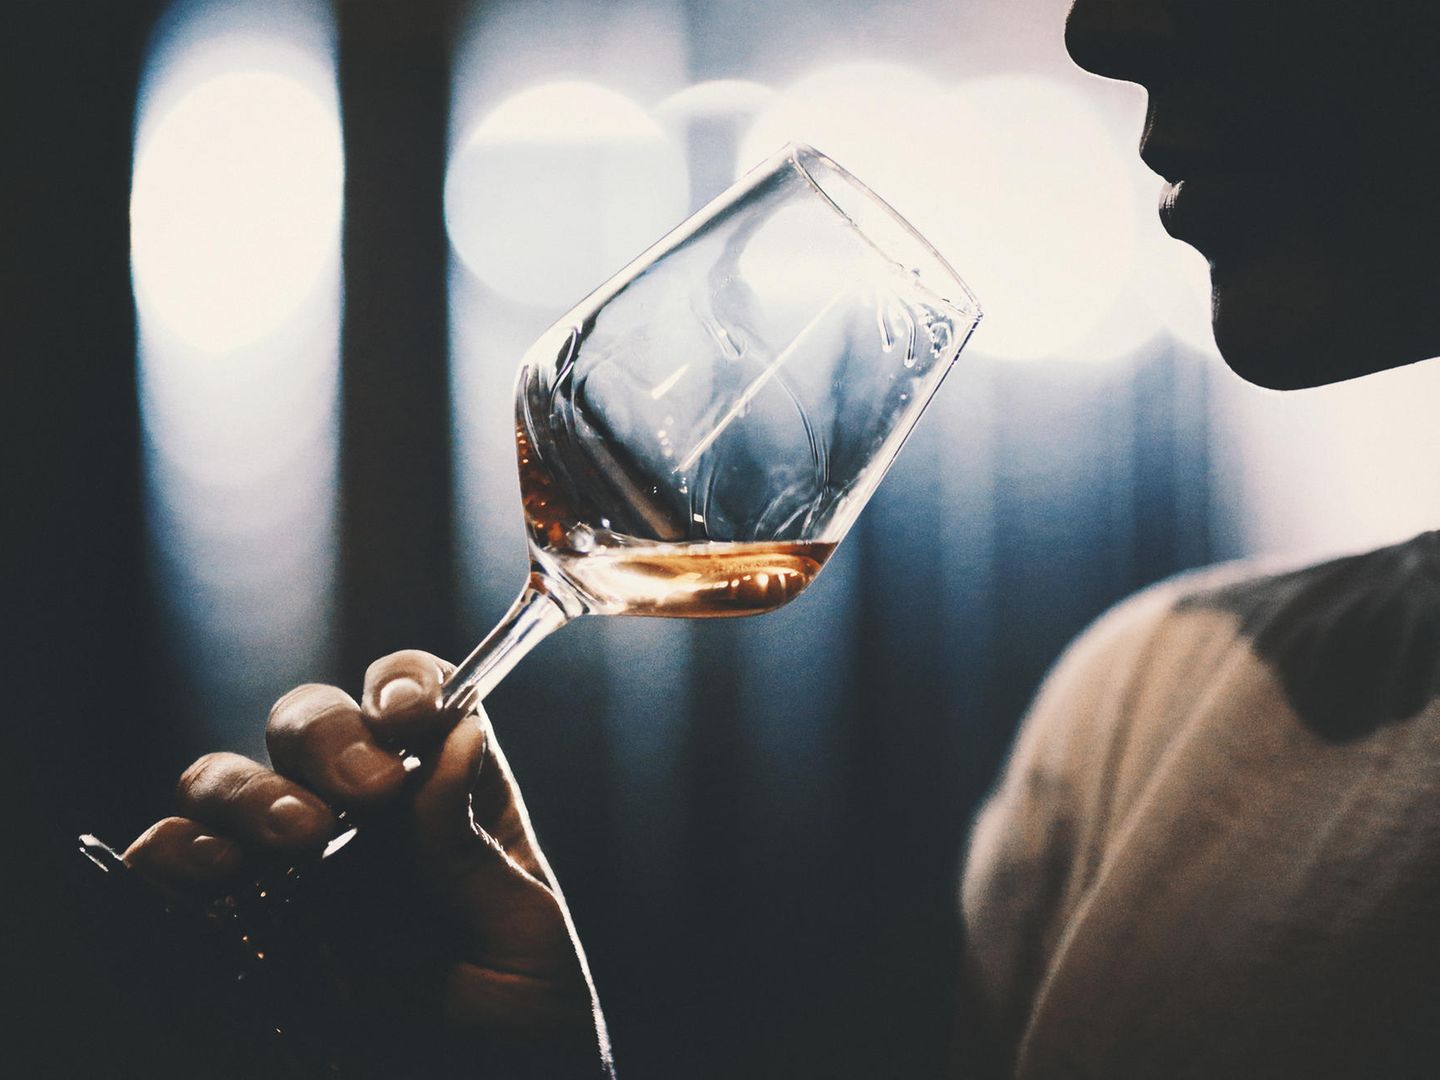 Alkoholkonsum: Wieso uns das nein sagen so schwer fällt